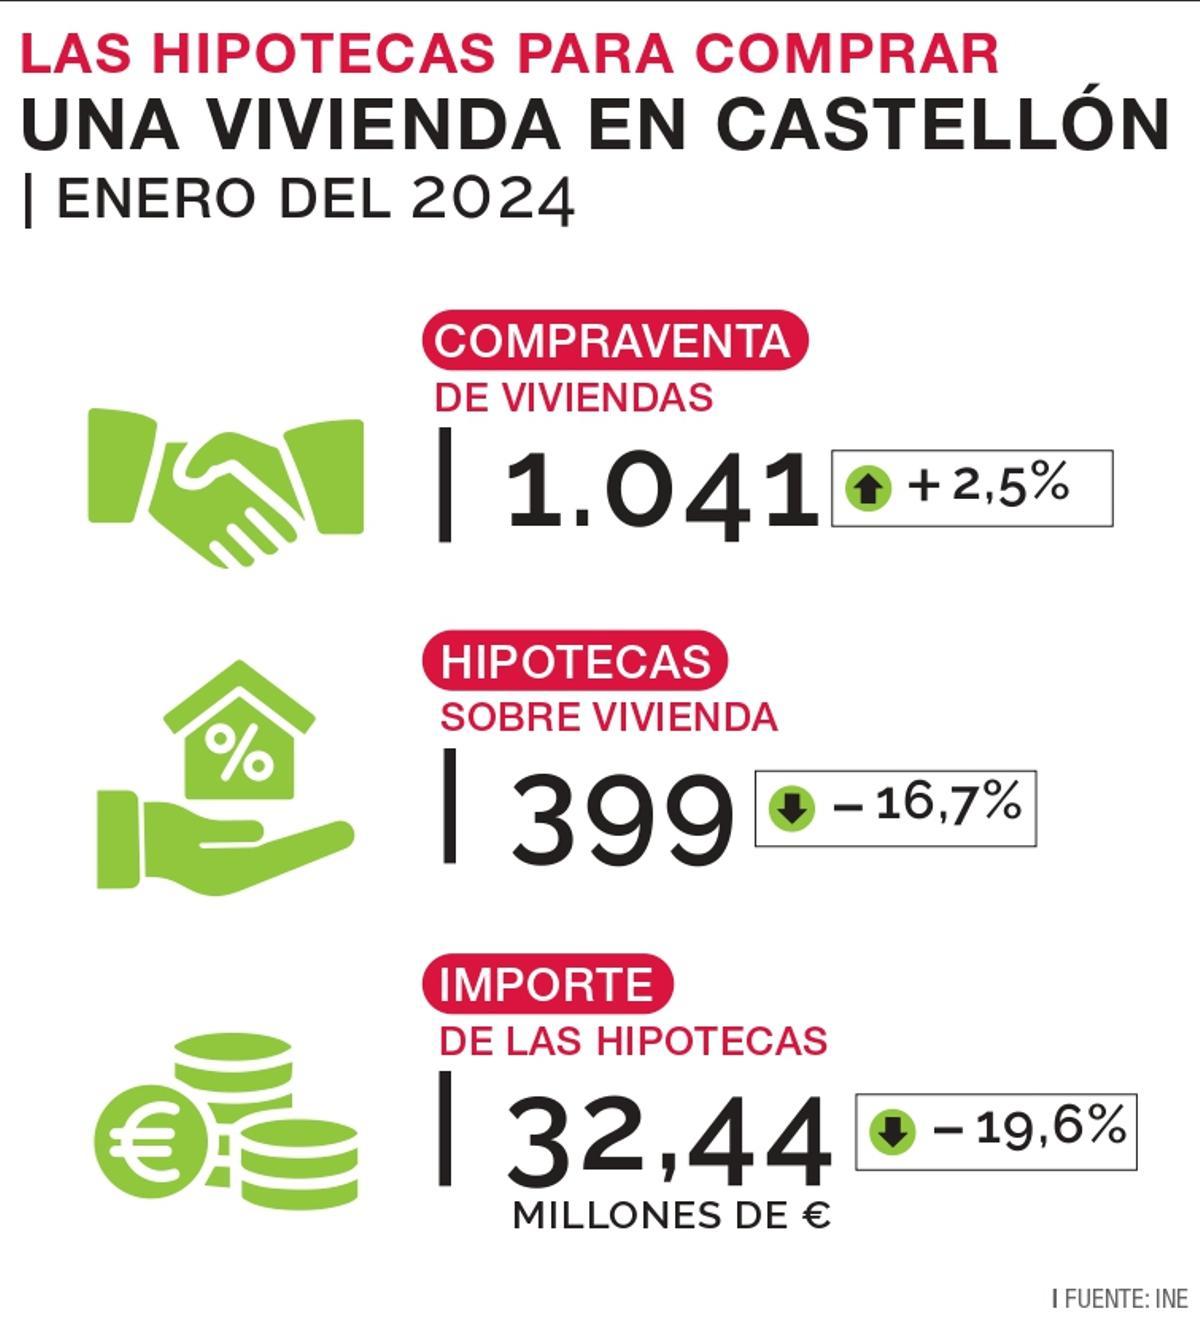 Las hipotecas en Castellón, en cifras.